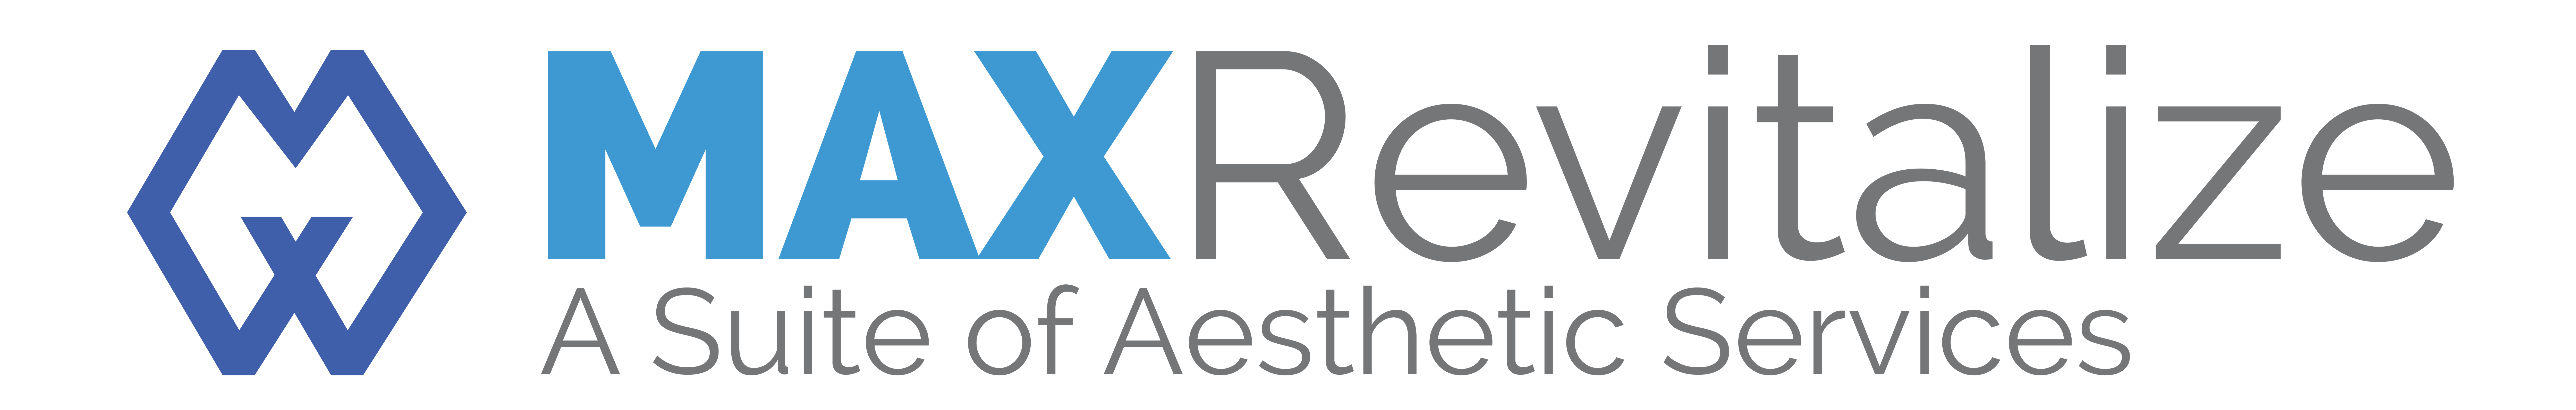 Max Revitalize Logo